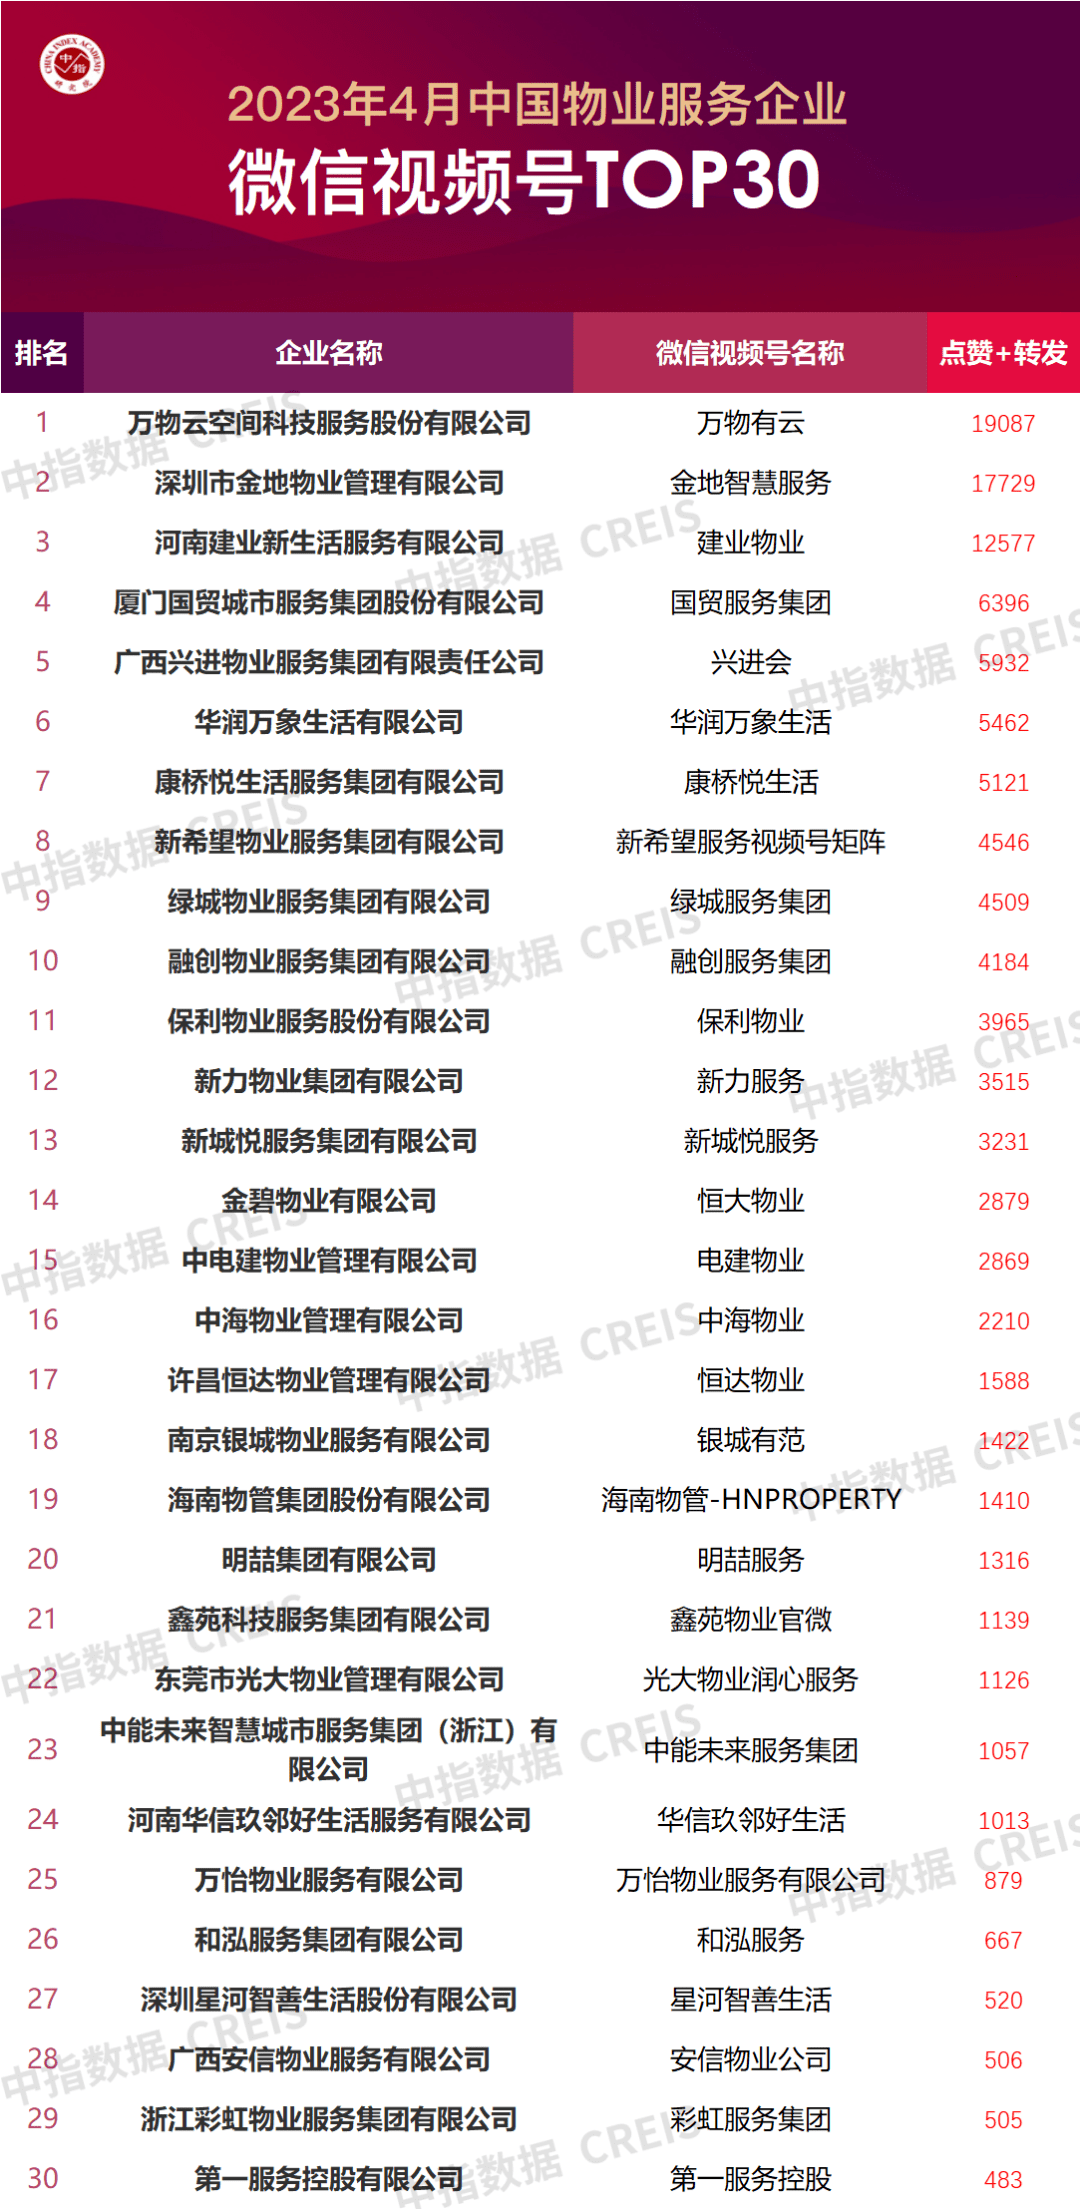 抖音视频号弹幕少钱TOP50公会
:2023年4月中国物业服务企业品牌传播TOP50